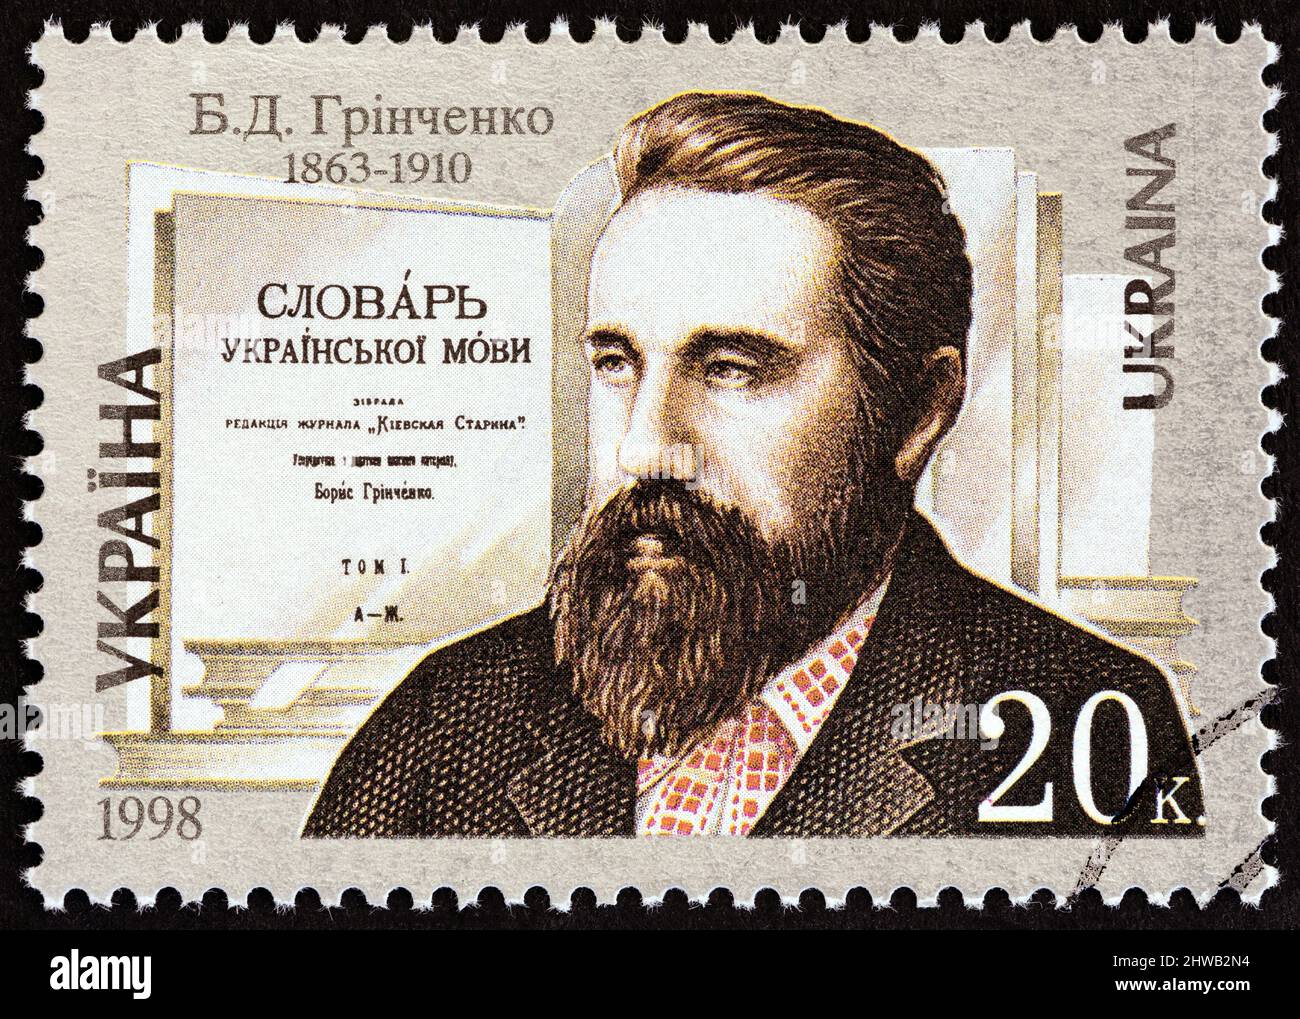 UKRAINE - UM 1998: Eine in der Ukraine gedruckte Briefmarke, die zum 135.. Jahrestag der Geburt von B.D. Grinchenko herausgegeben wurde, zeigt den Schriftsteller Borys Grinchenko. Stockfoto